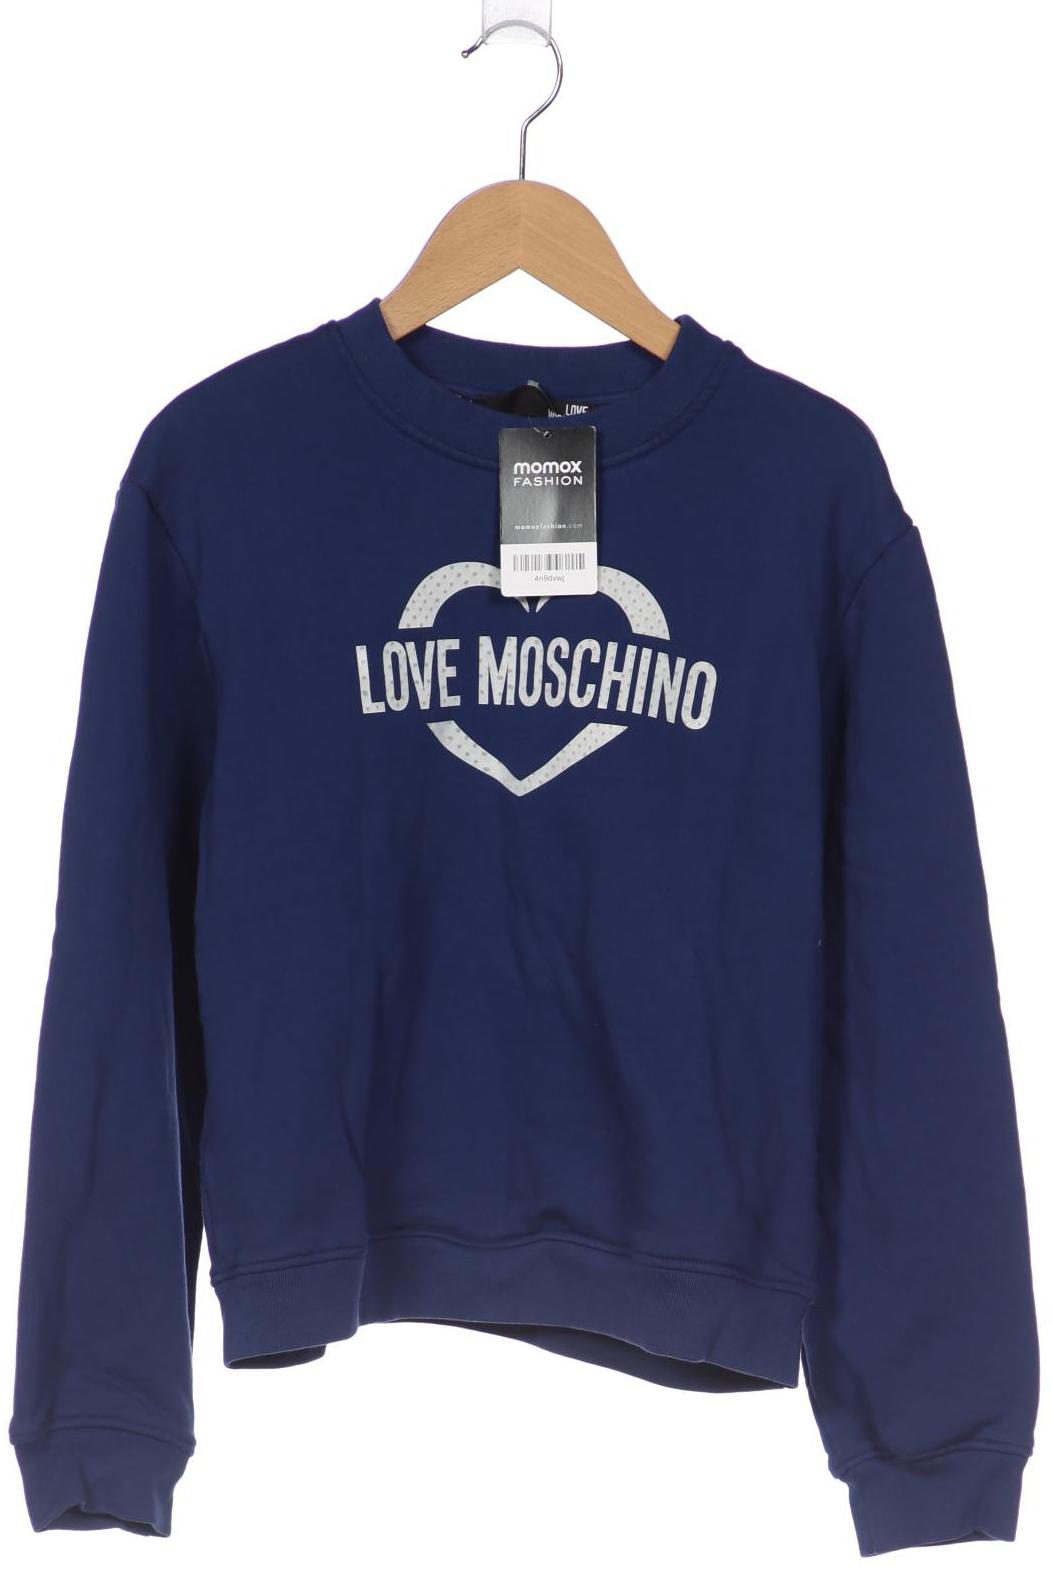 Love Moschino Damen Sweatshirt, marineblau, Gr. 32 von Love Moschino